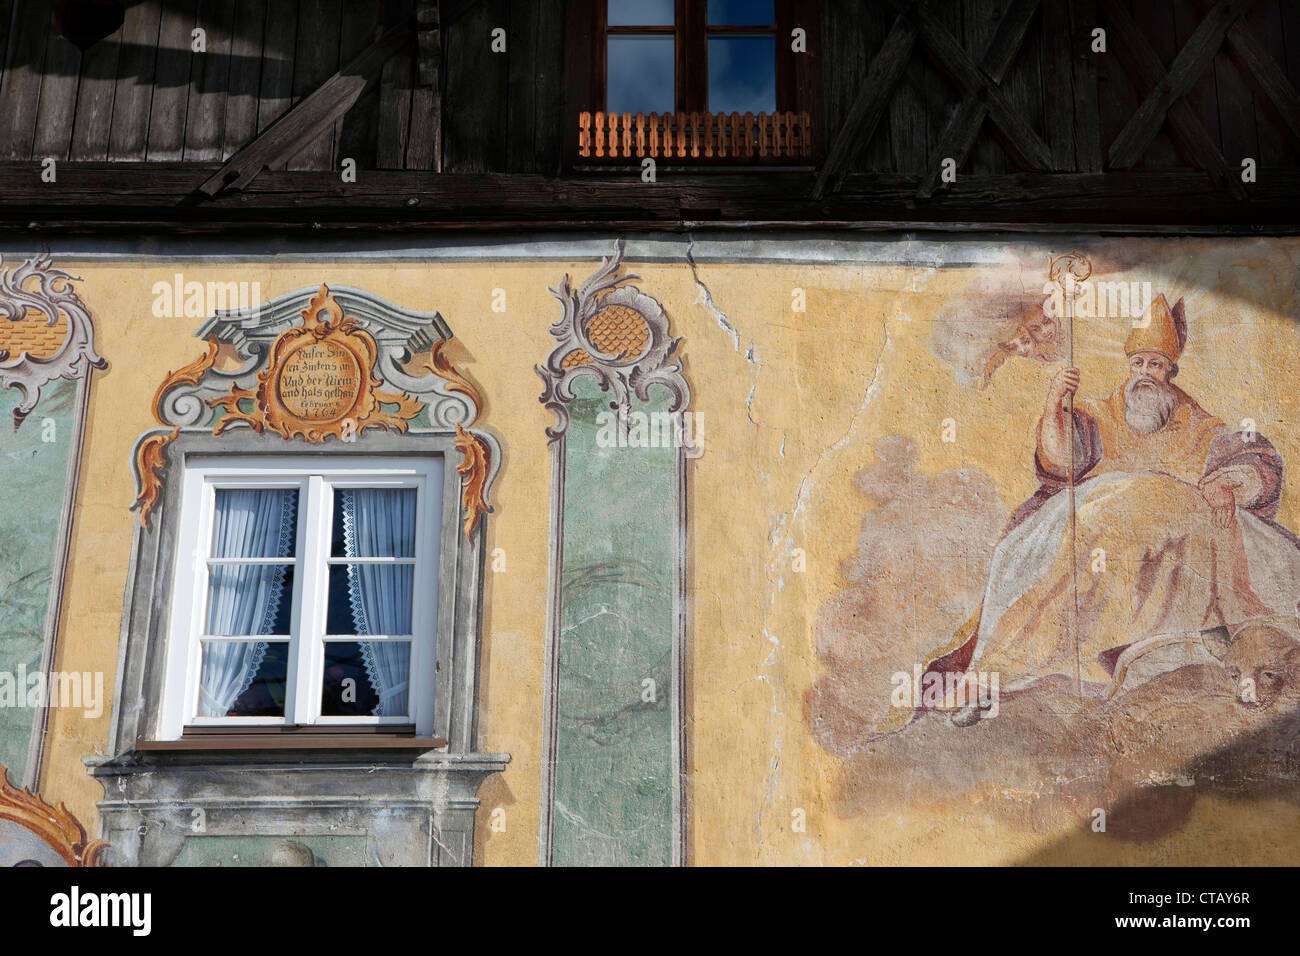 Traditionnellement peints mur extérieur avec l'inscription d'une personne sainte, Mittenwald, Bavière, Allemagne Banque D'Images